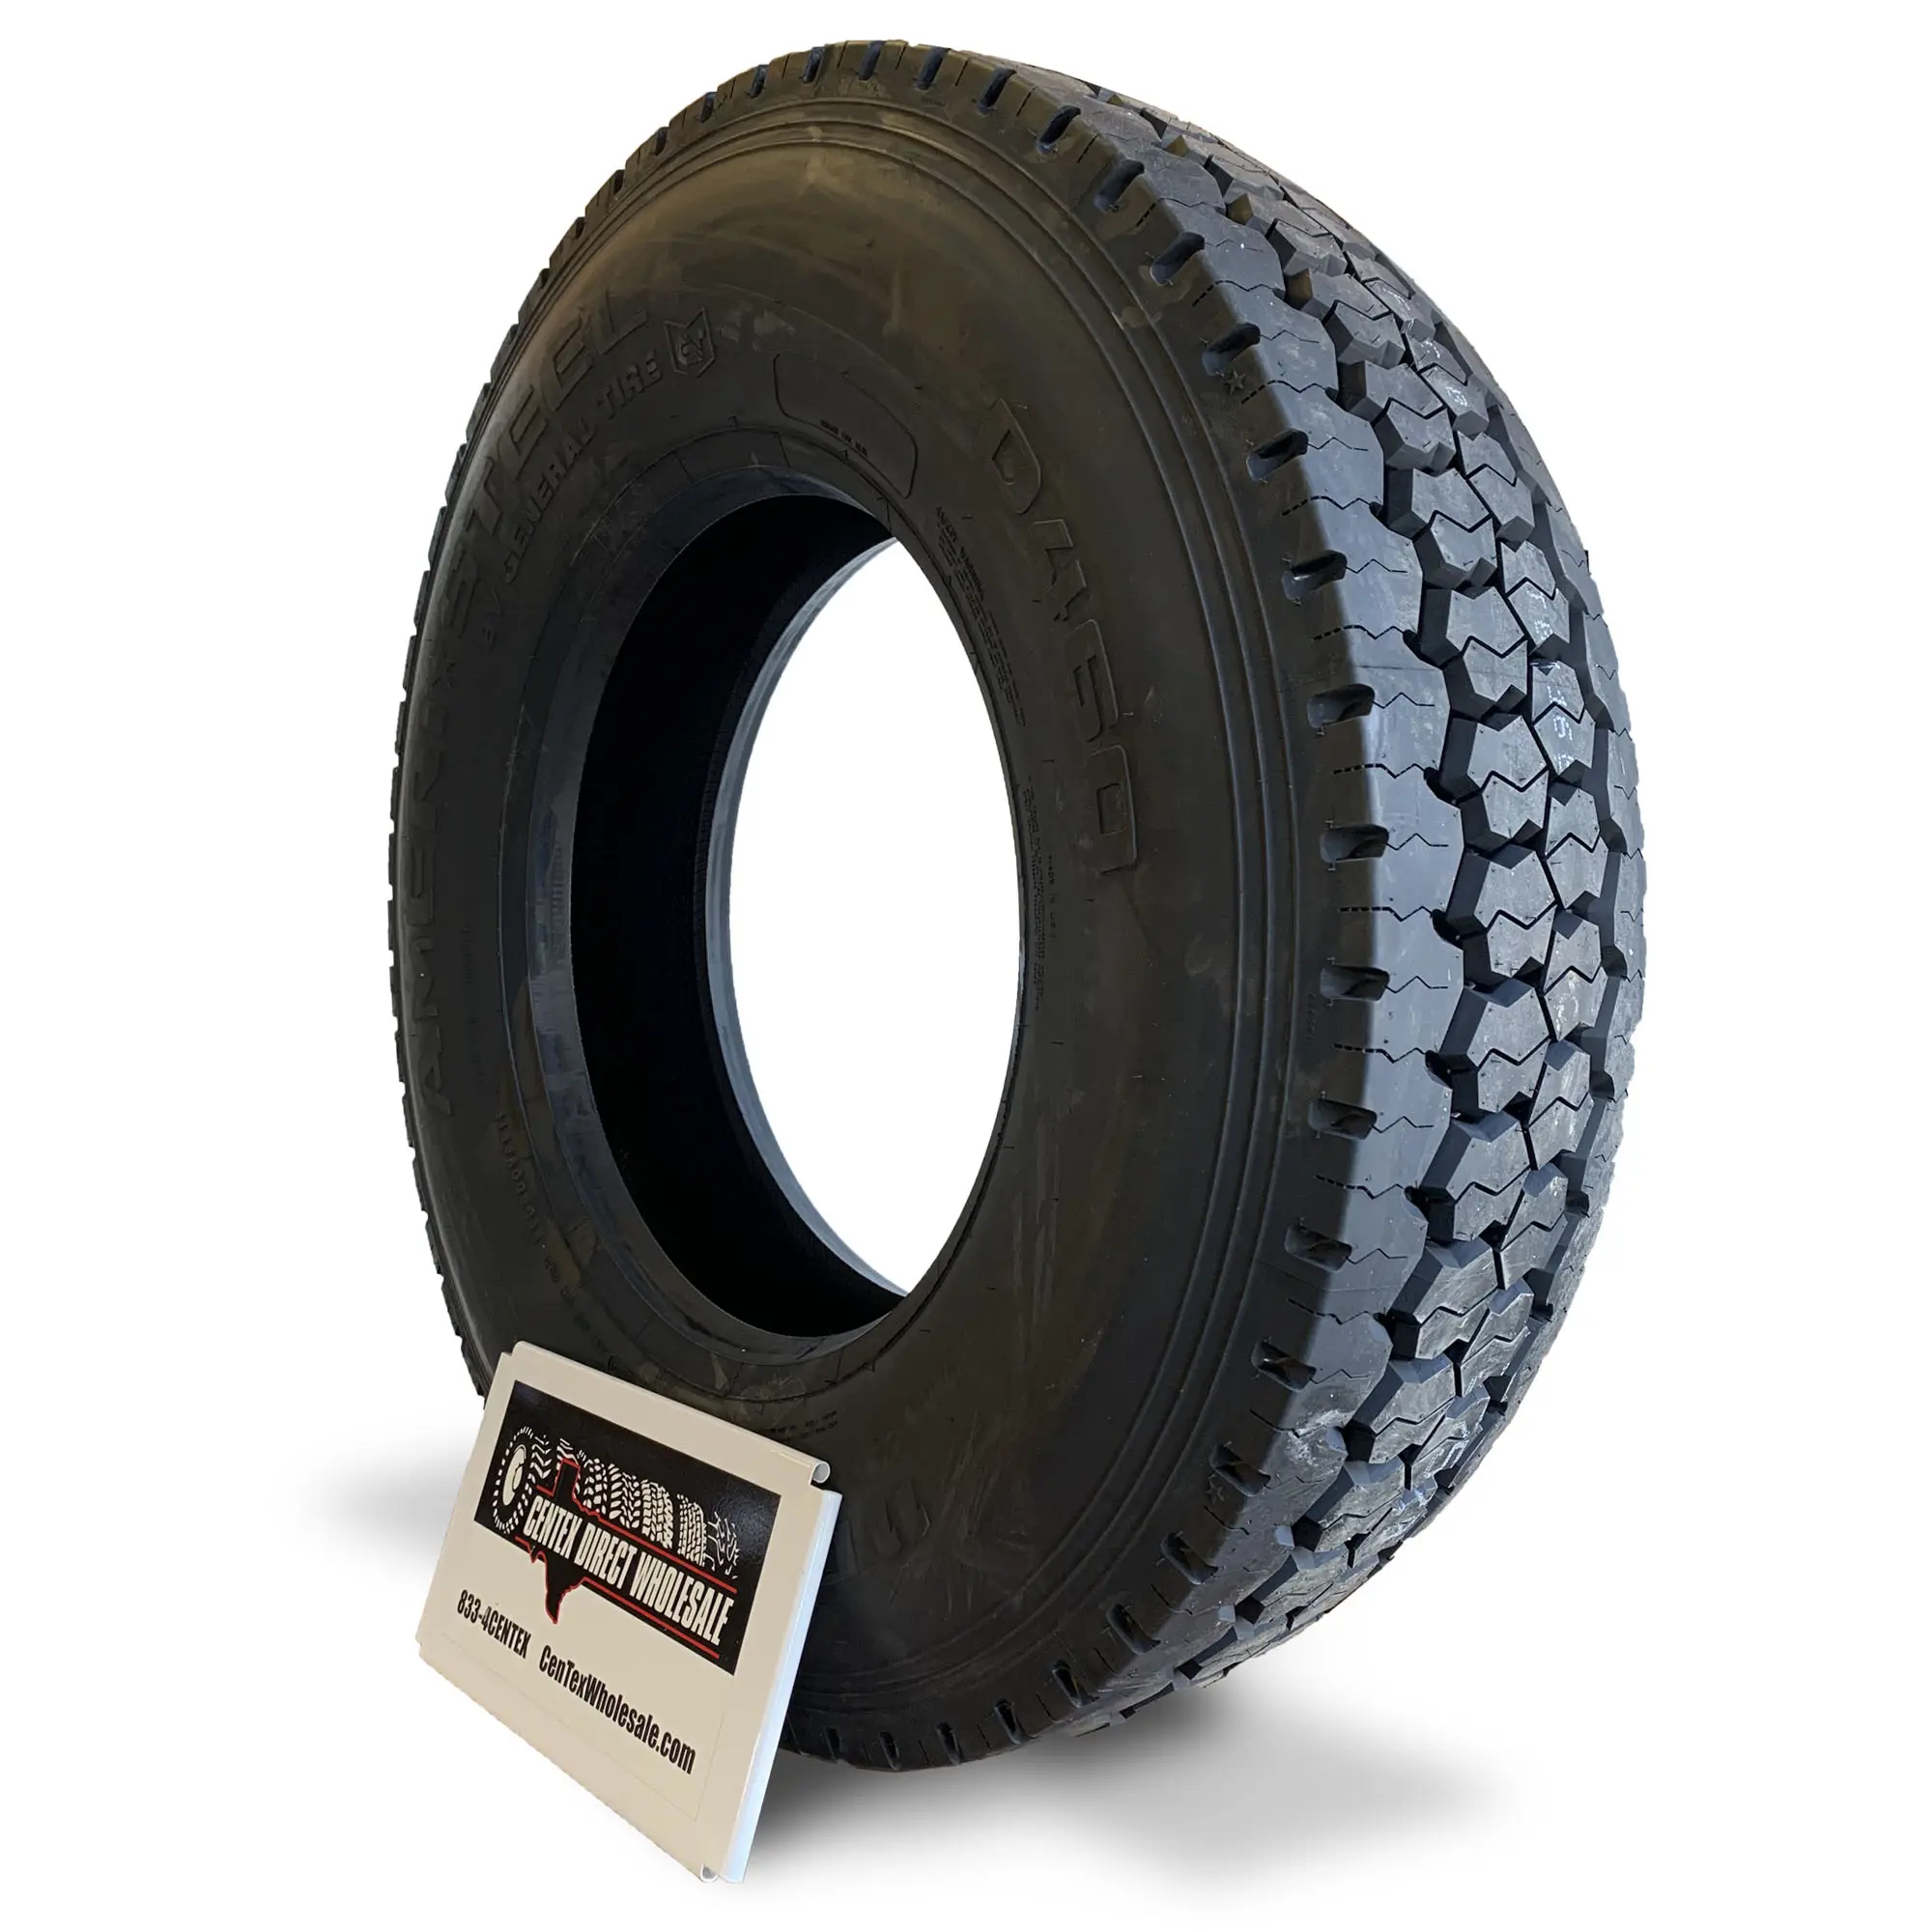 Les pneus de camion de gros 315 80r22.5 de haute qualité à prix d'usine conviennent aux jantes de camion 22.5x9.00